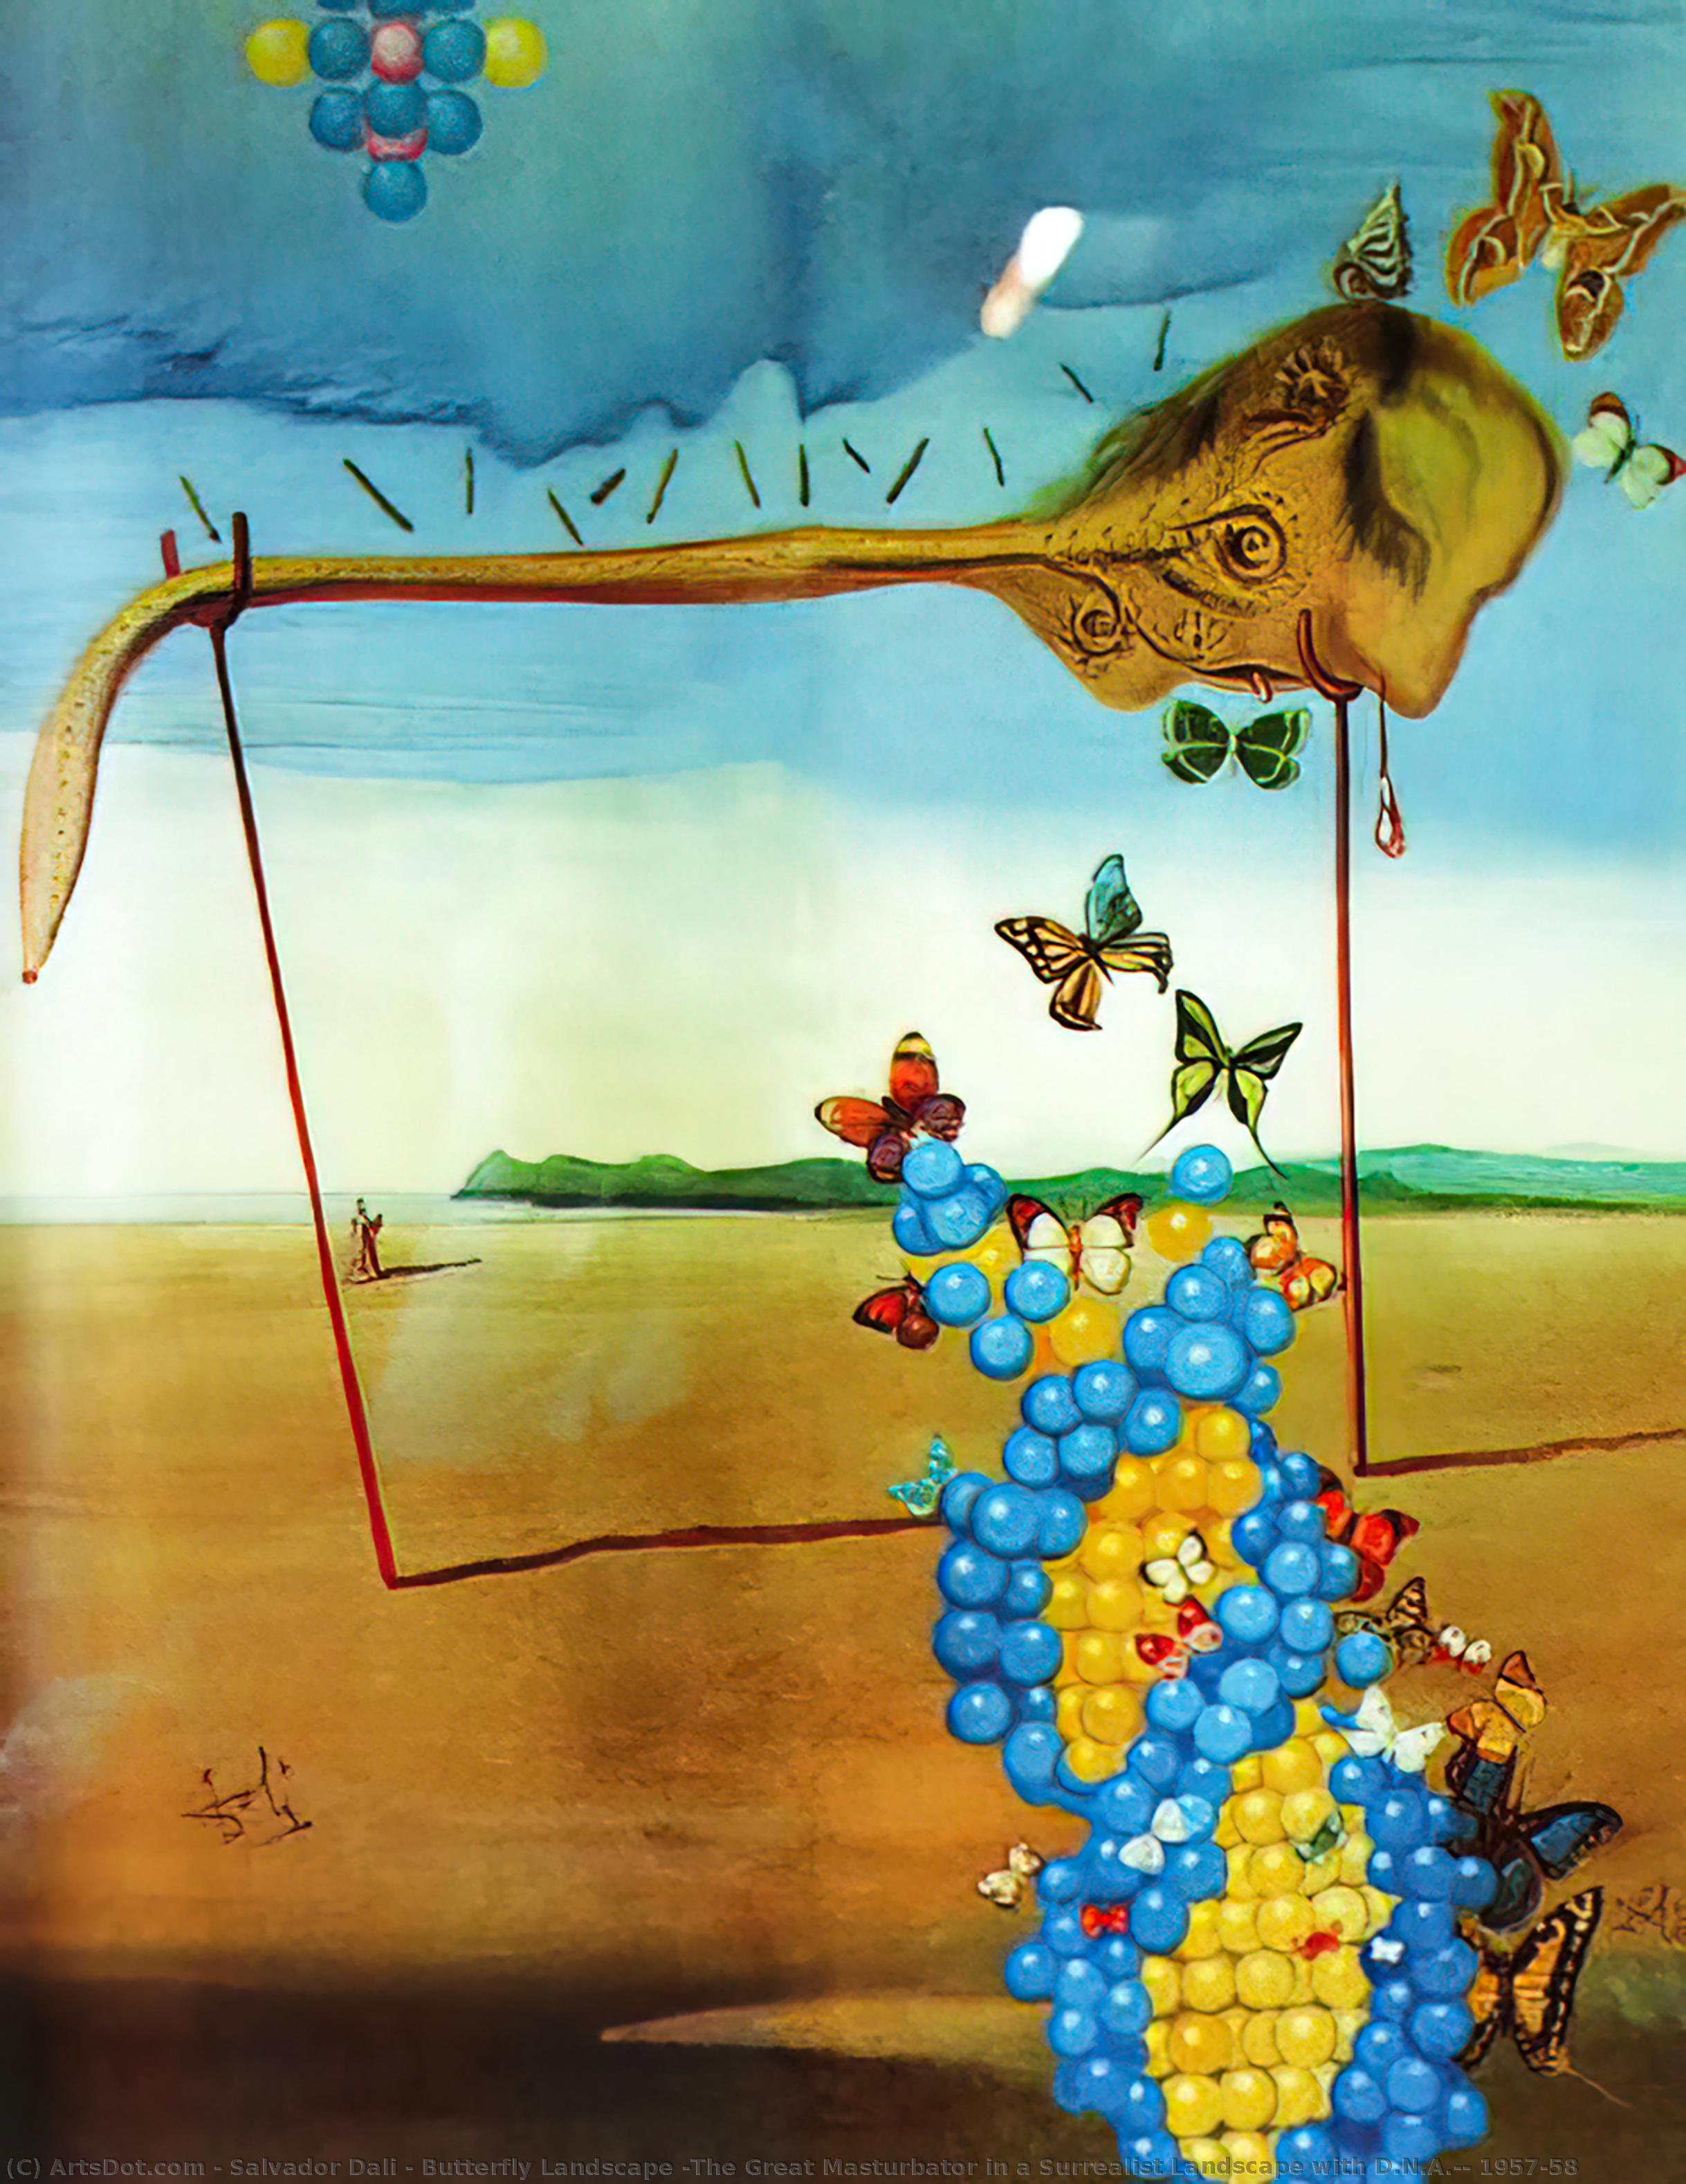 Wikioo.org - Bách khoa toàn thư về mỹ thuật - Vẽ tranh, Tác phẩm nghệ thuật Salvador Dali - Butterfly Landscape (The Great Masturbator in a Surrealist Landscape with D.N.A.), 1957-58